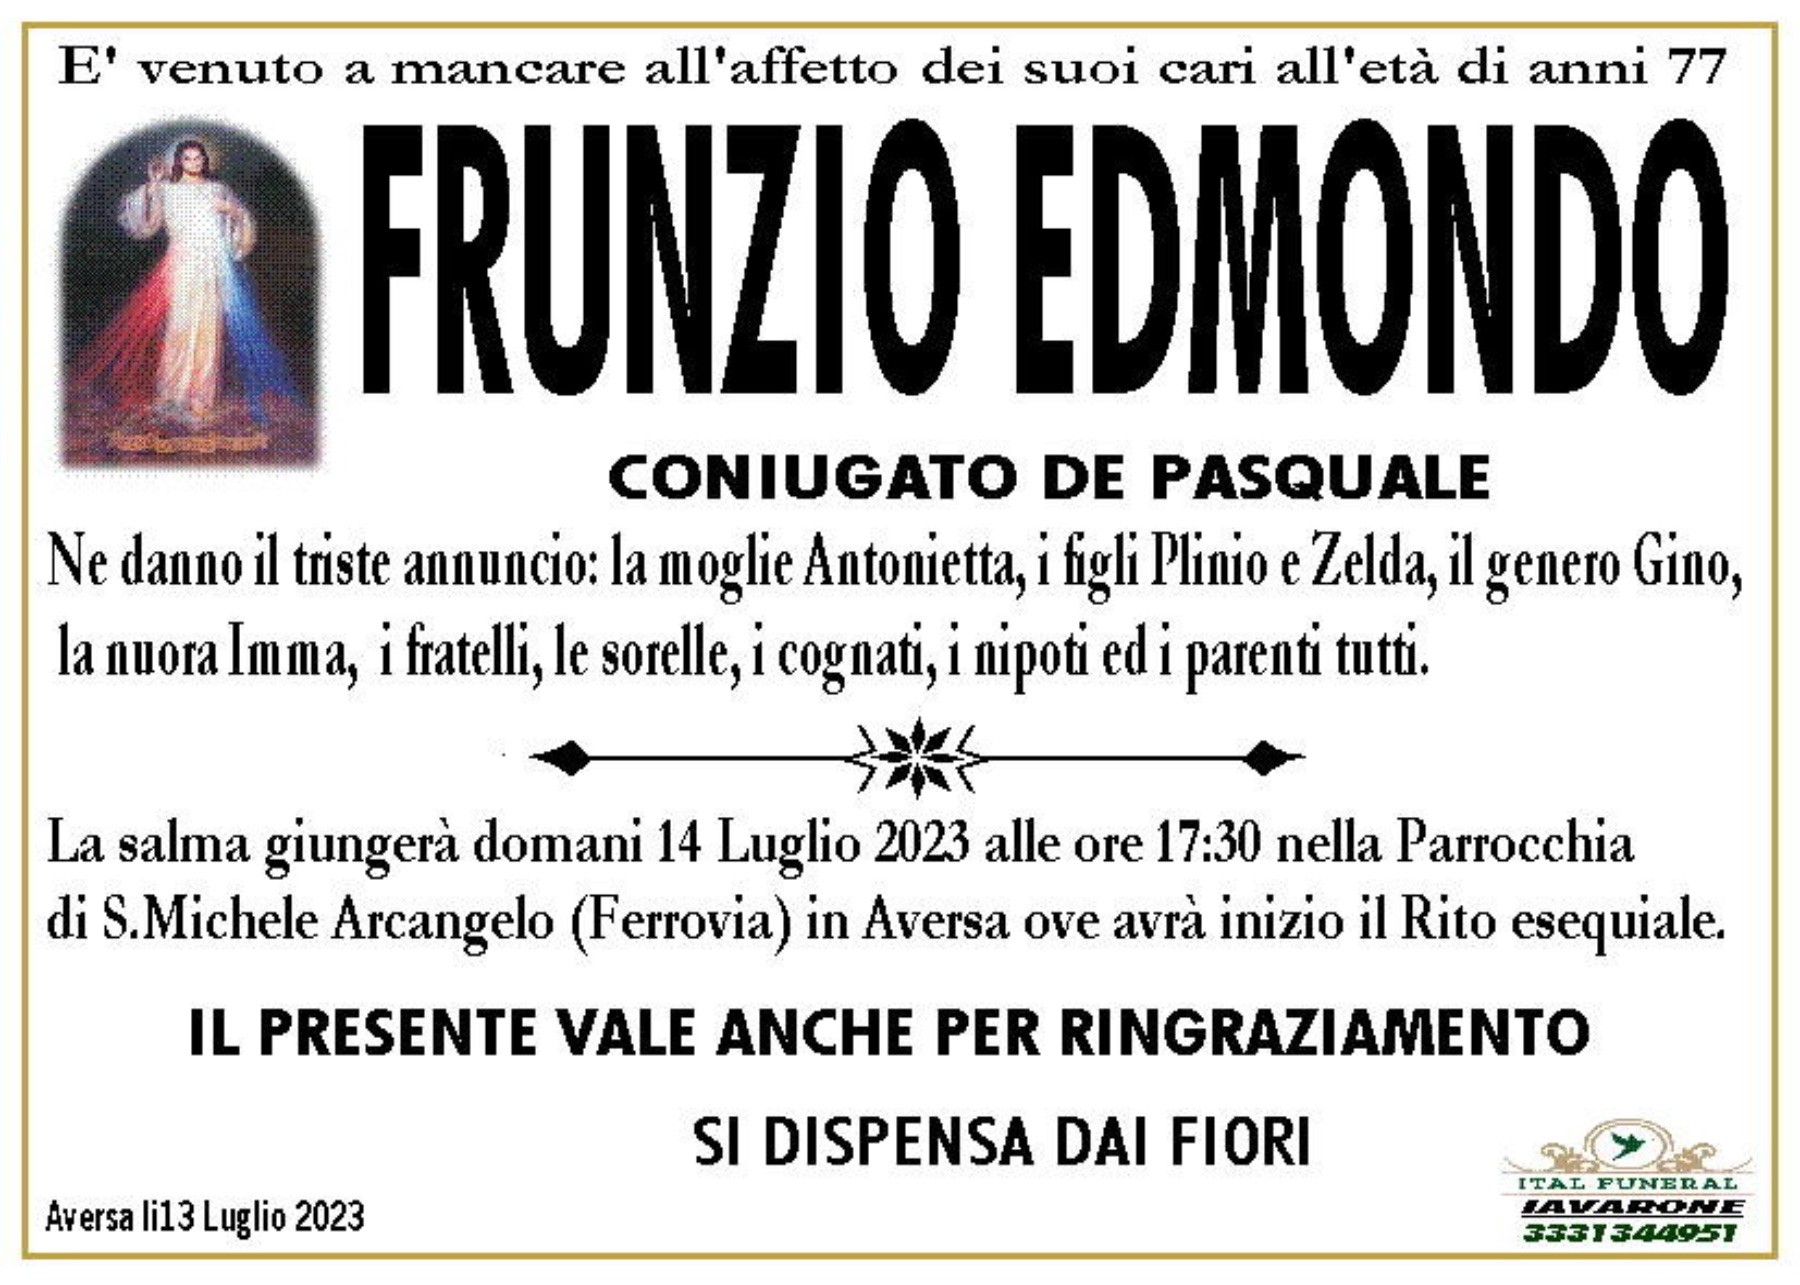 Edmondo Frunzio